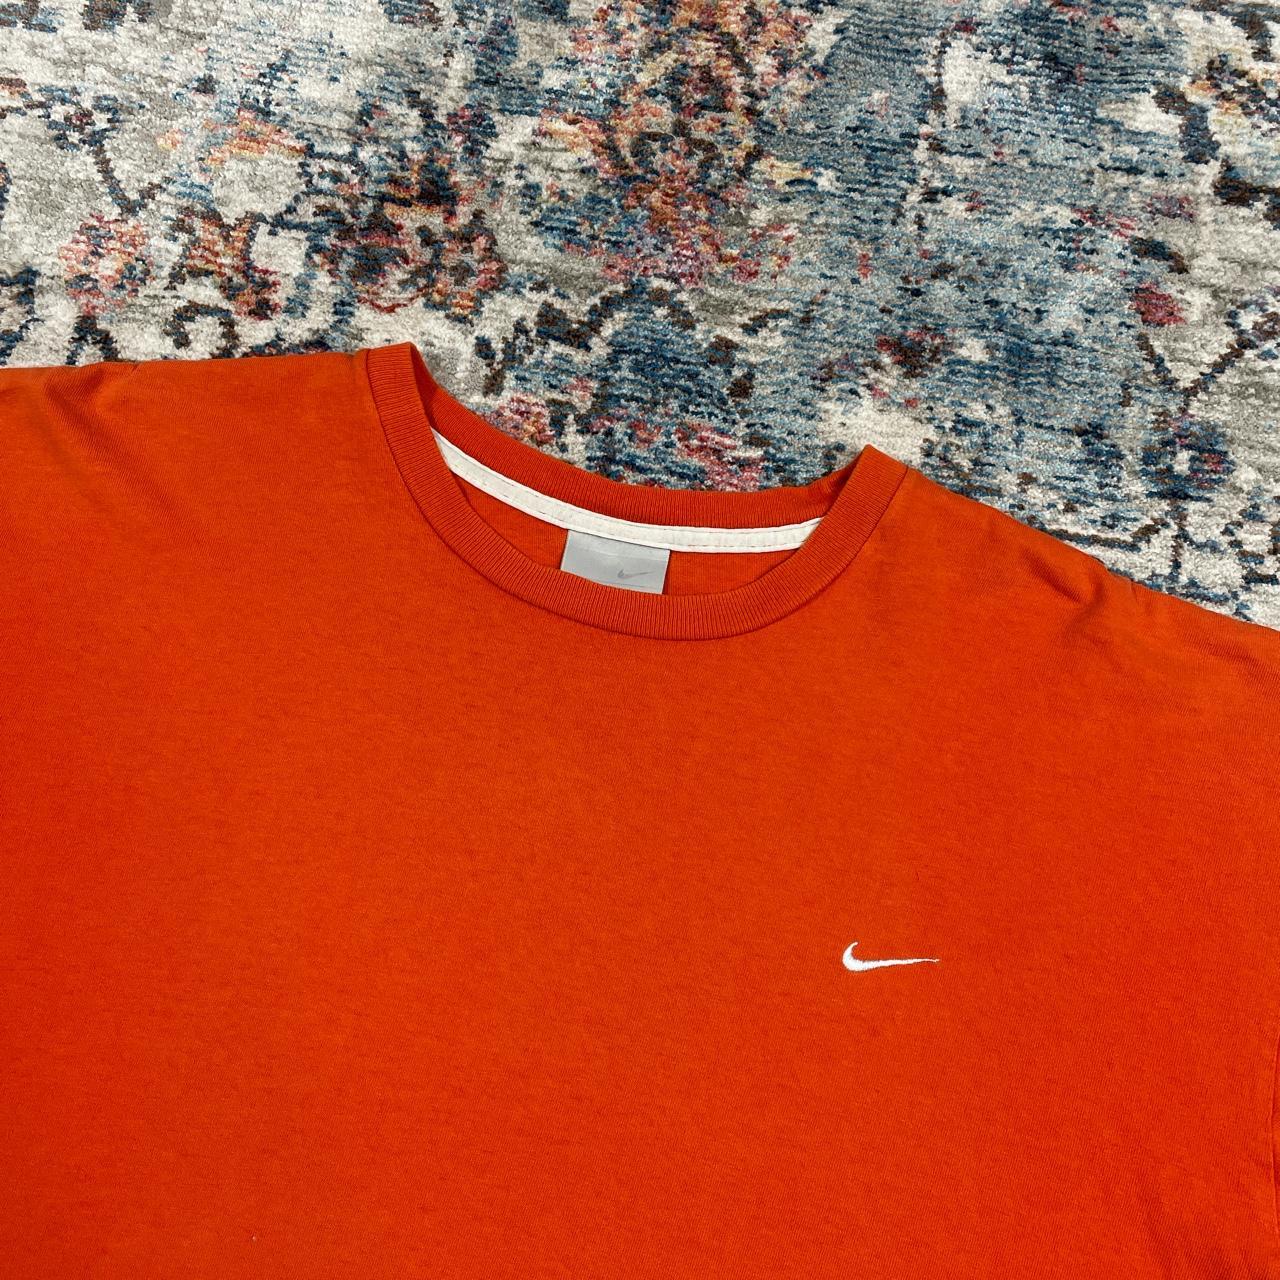 Vintage Nike Orange T-Shirt